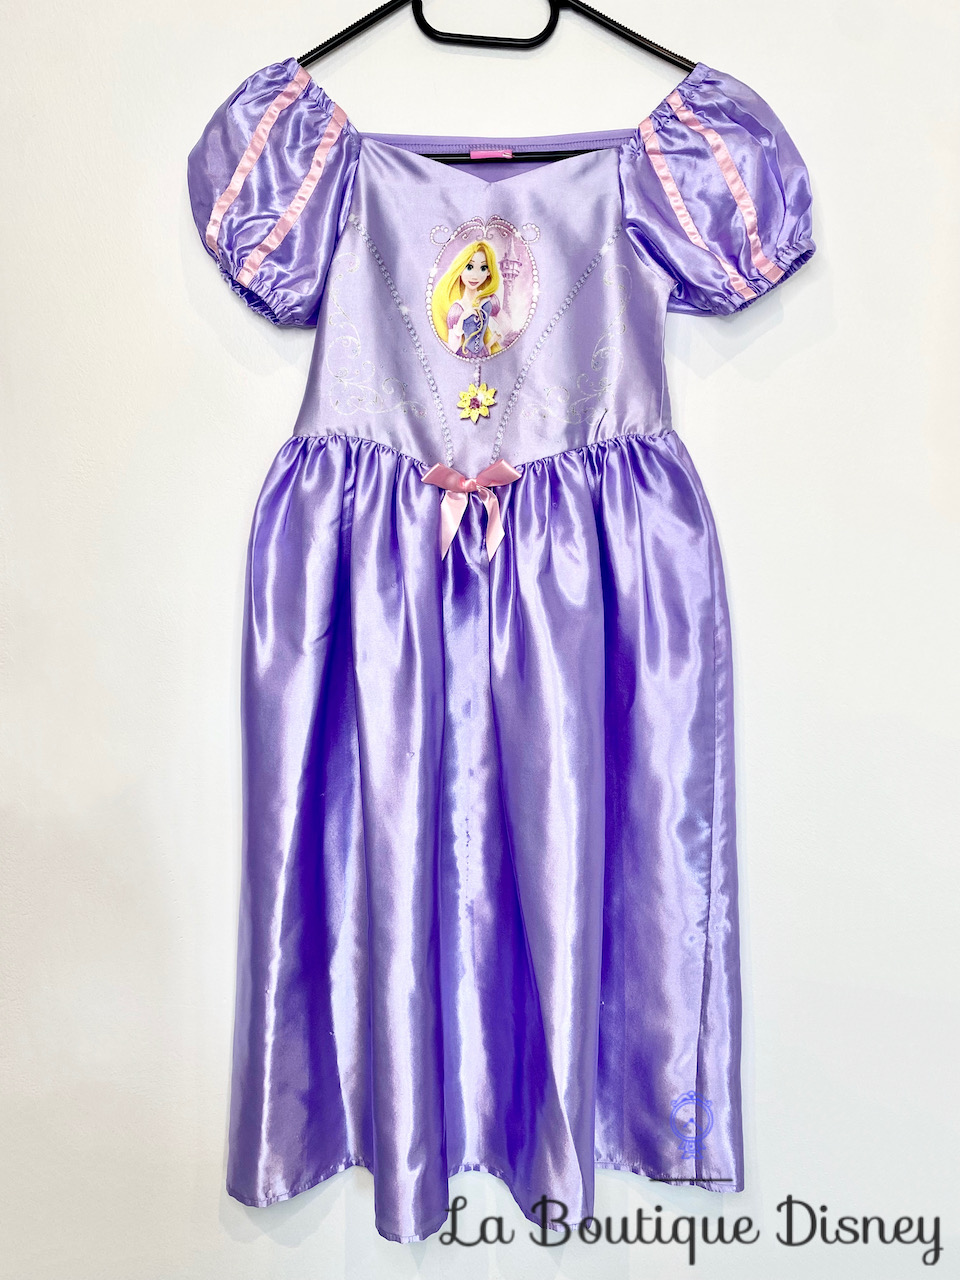 Déguisement Elsa La reine des neiges Disney Rubies Costume taille 5-6 ans  robe princesse bleu portrait - Déguisements/Taille 4 à 6 ans - La Boutique  Disney